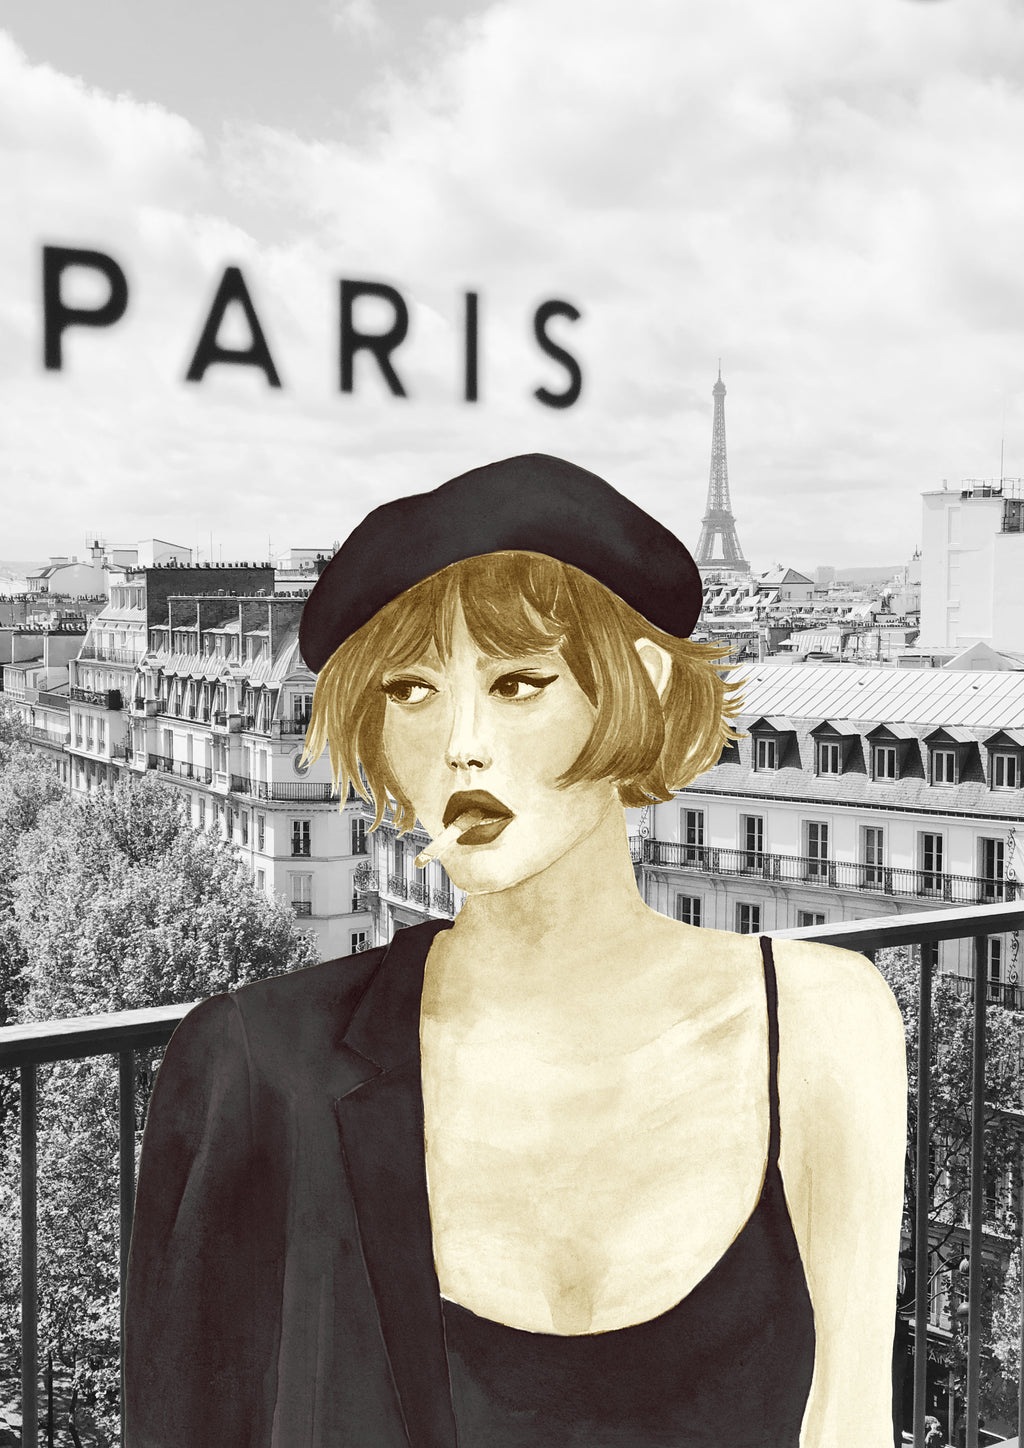 Impresión de acuarela original. Mujer en Paris, con boina y cigarrillo en la boca. Disponible en tamaños A3 y A4